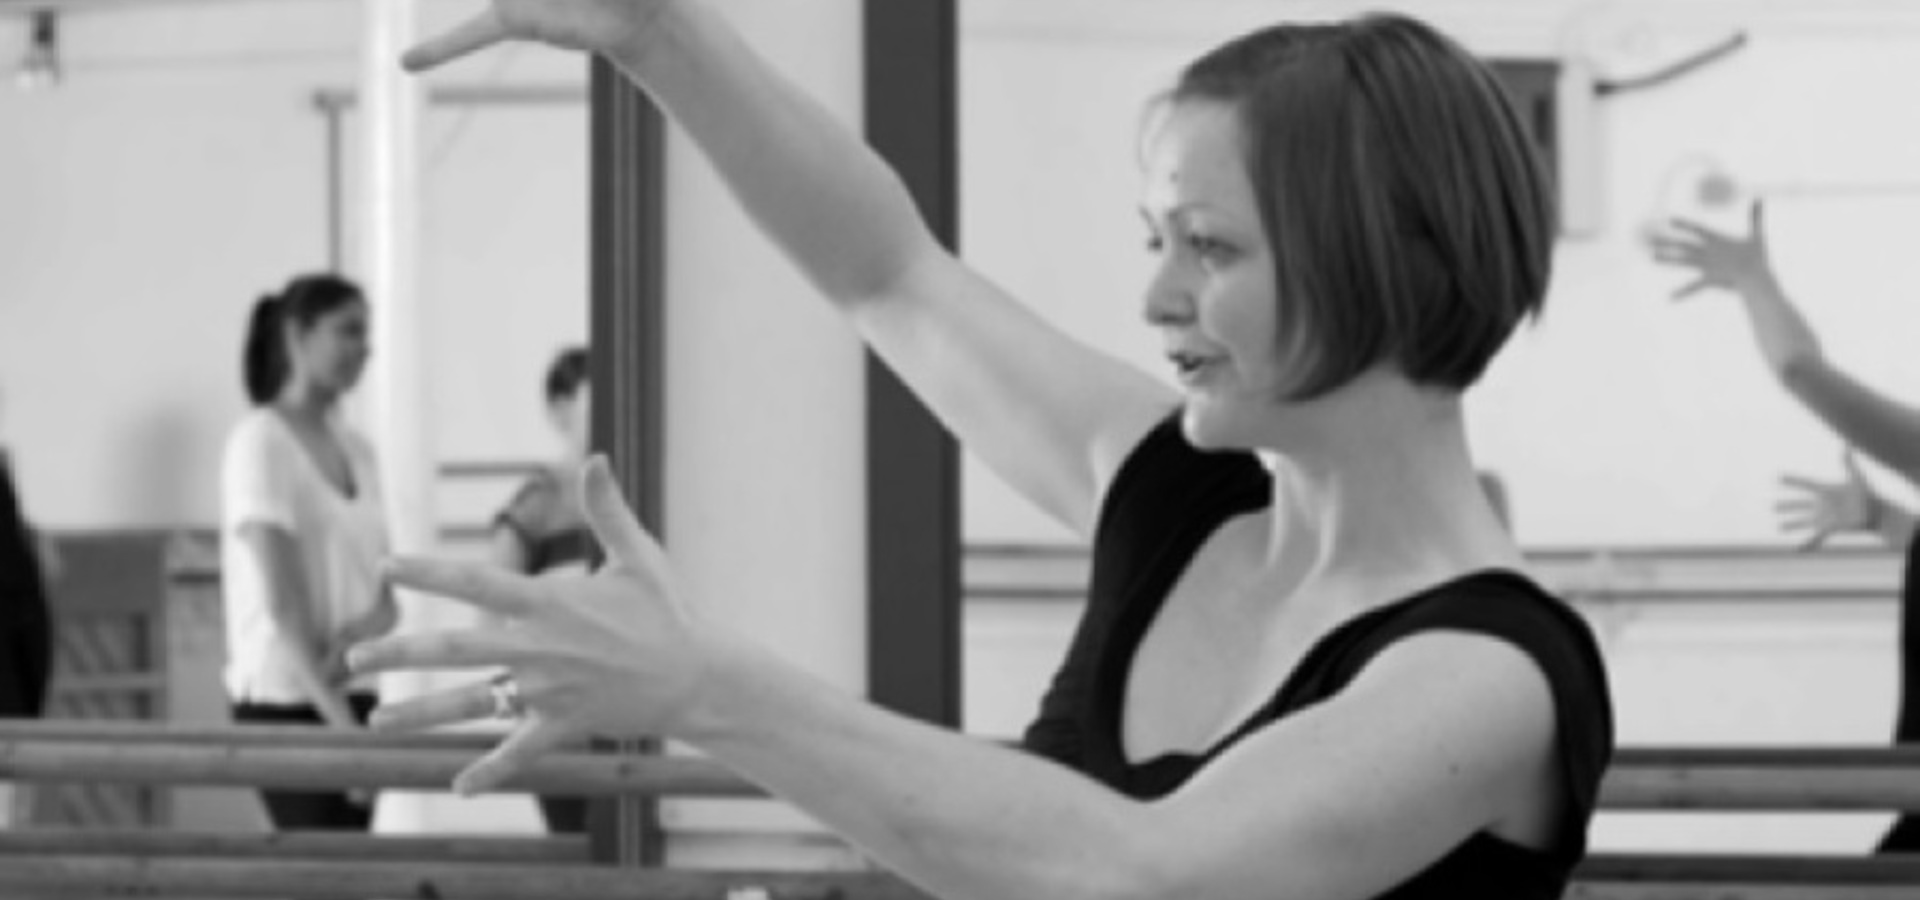 Royal Academy of Dance: Nadaljevalni plesni seminarji